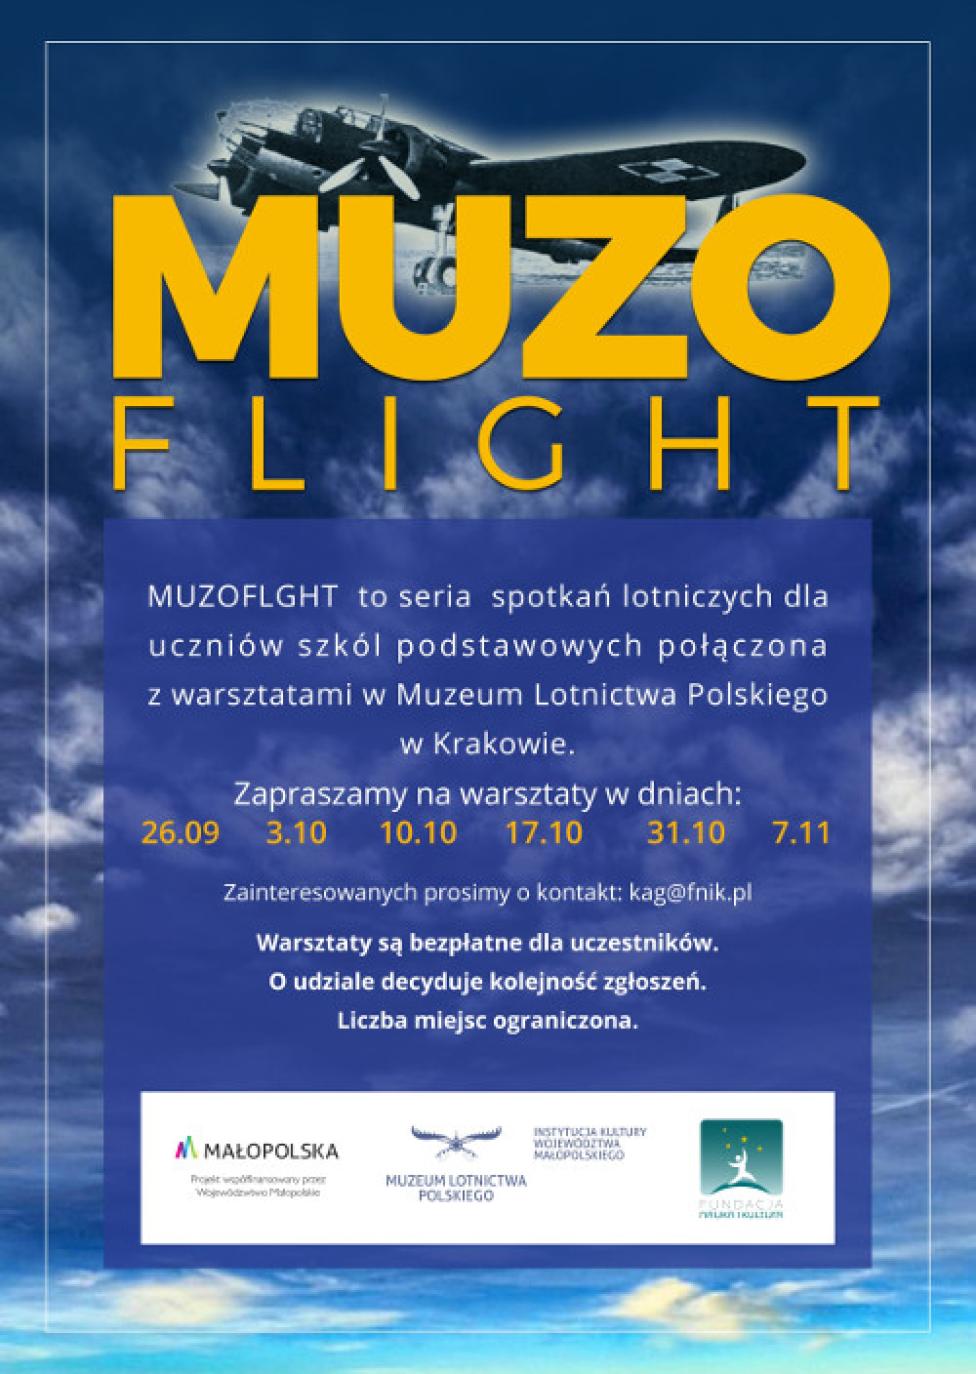 MuzoFLIGHT – zajęcia w krakowskim Muzeum Lotnictwa